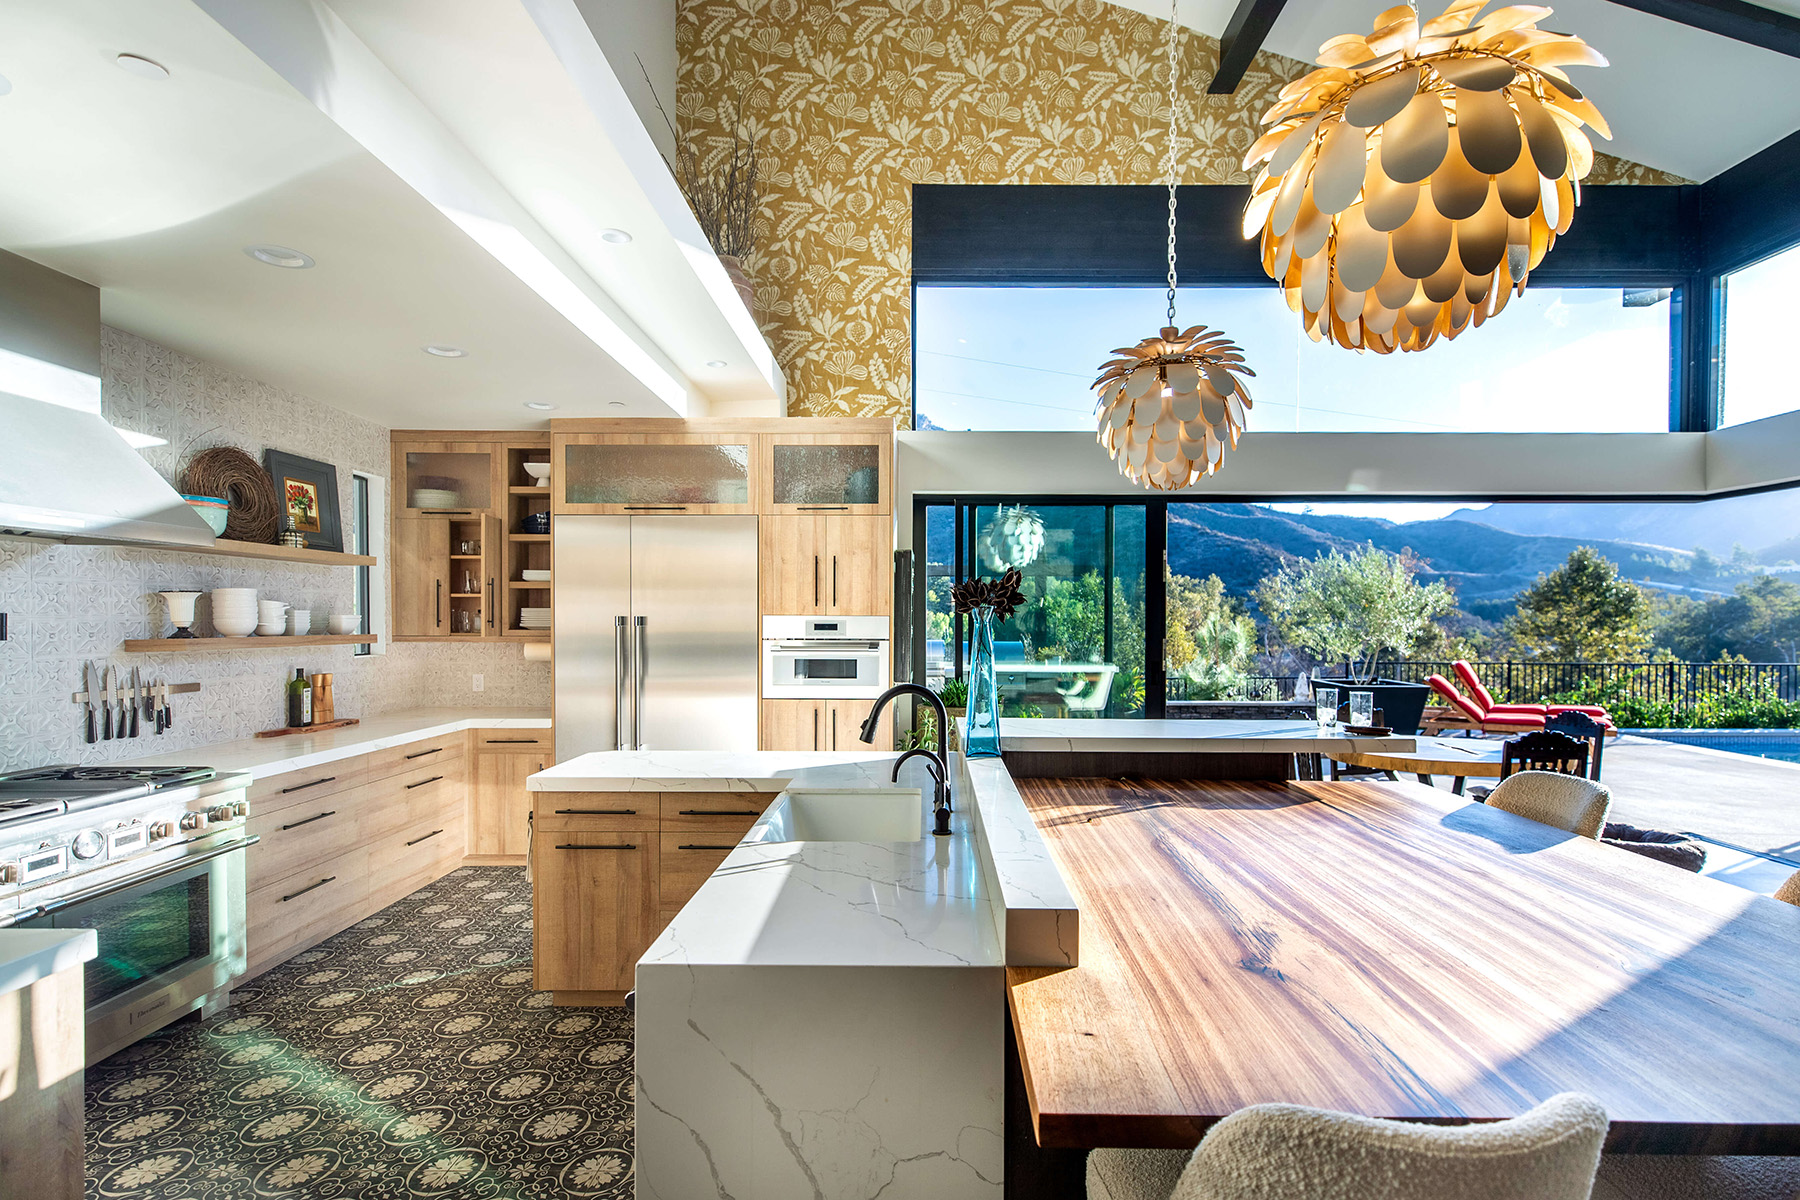 Residential architect new modern farmhouse kitchen